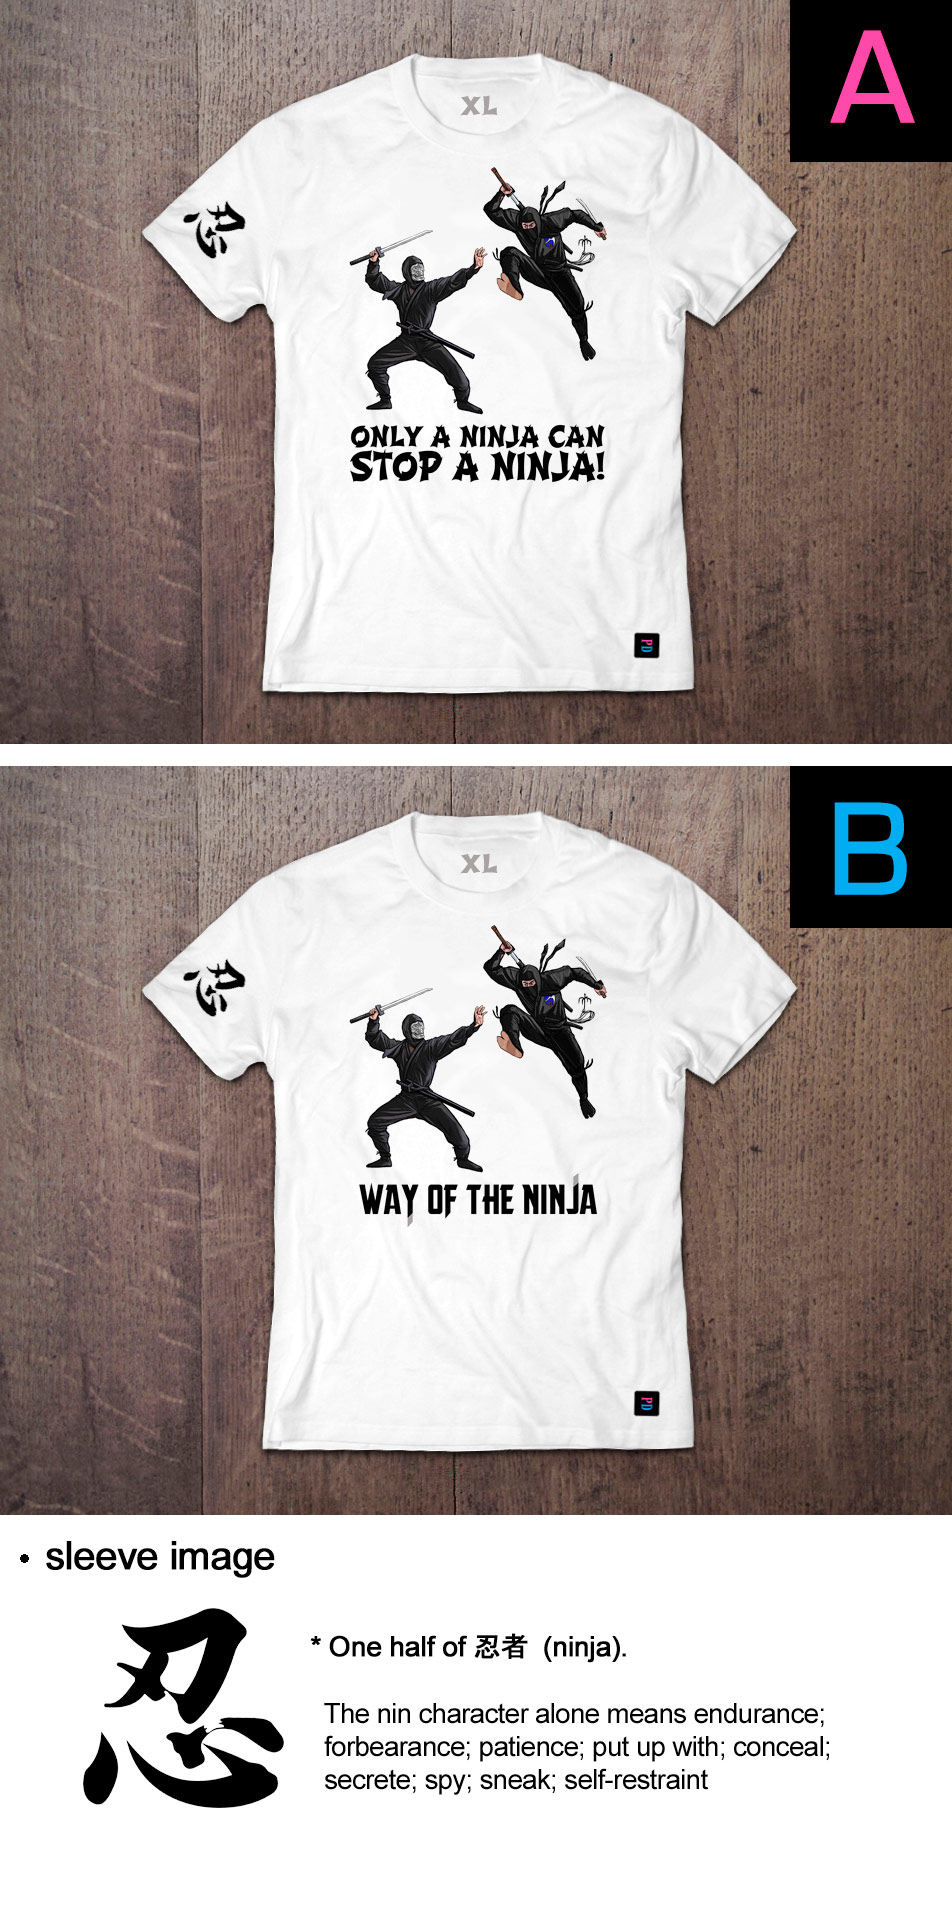 Ninja War PD T-Shirt designs by Marten Go aka MGO